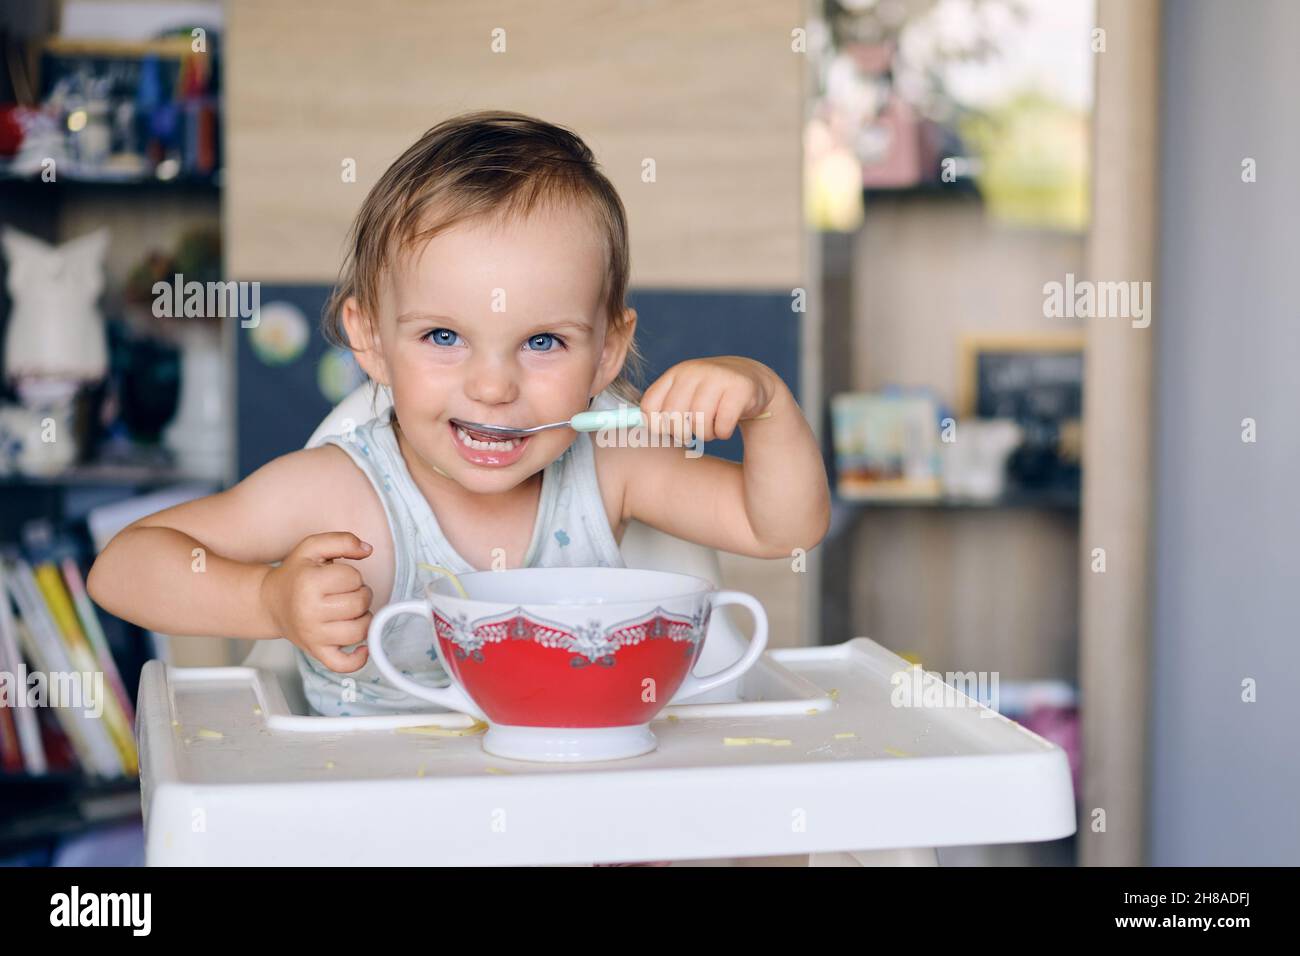 Porträt eines hübschen blonden Mädchens mit blauen Augen, das aus einer Keramikschale Suppe isst und die Kamera anschaut Stockfoto